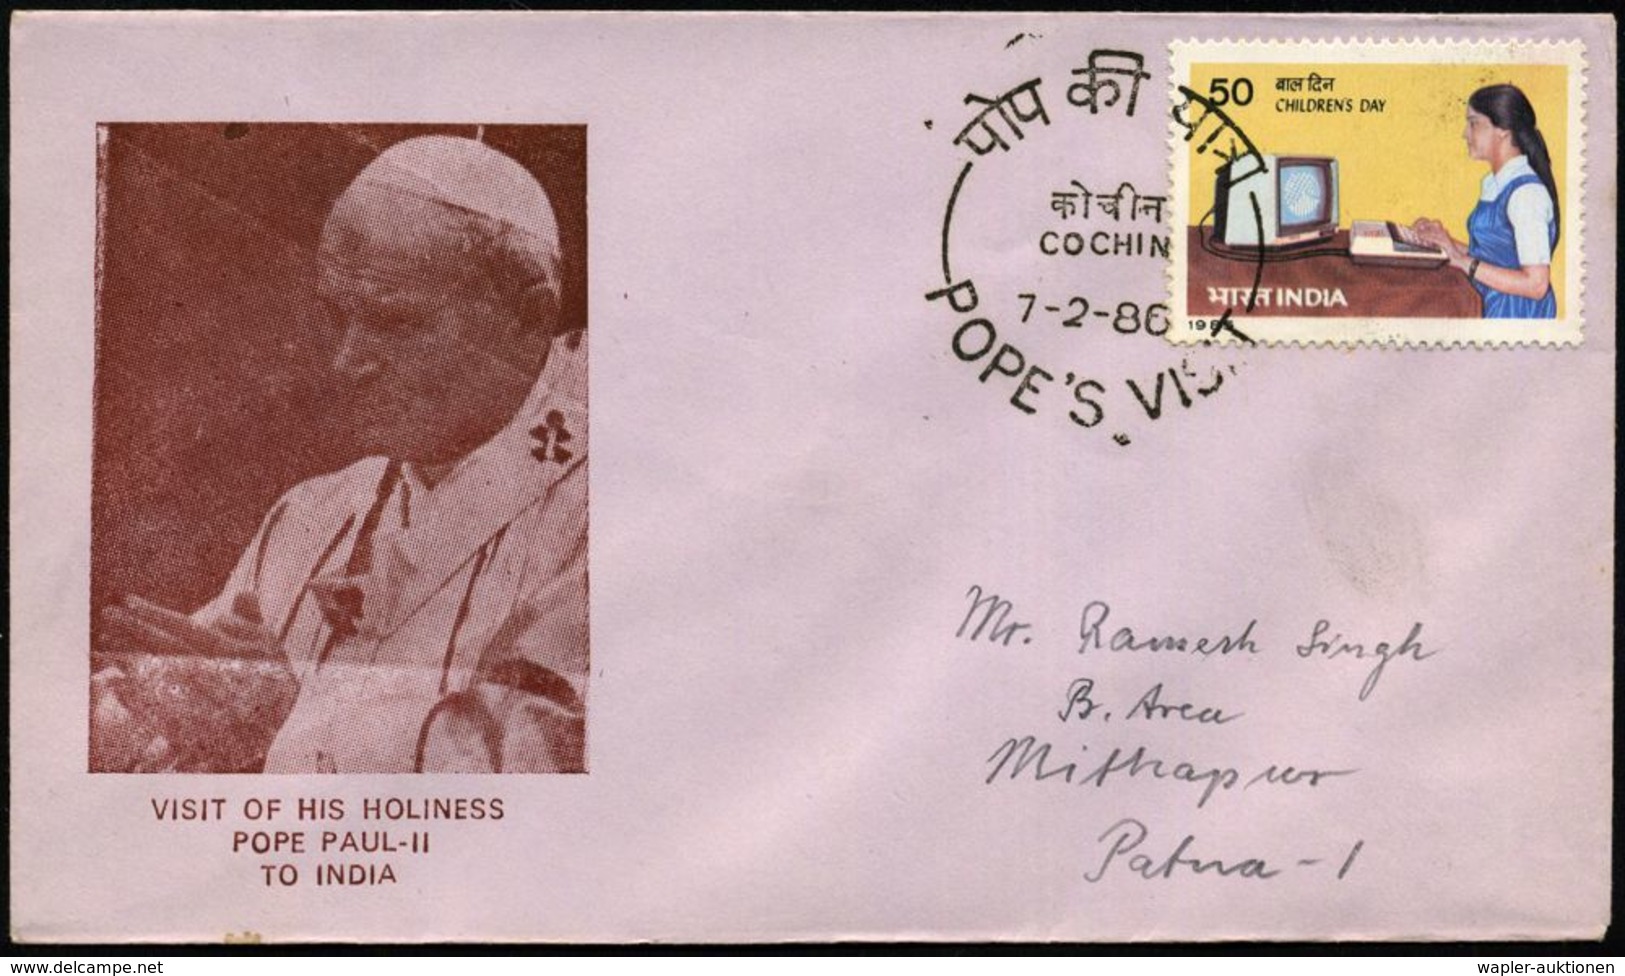 INDIEN 1986 Papst Paul II, Reise nach Indien, 13 verschied. Orts-SSt der 13 Stationen je auf Papst-SU: POPE PAUL II , 13